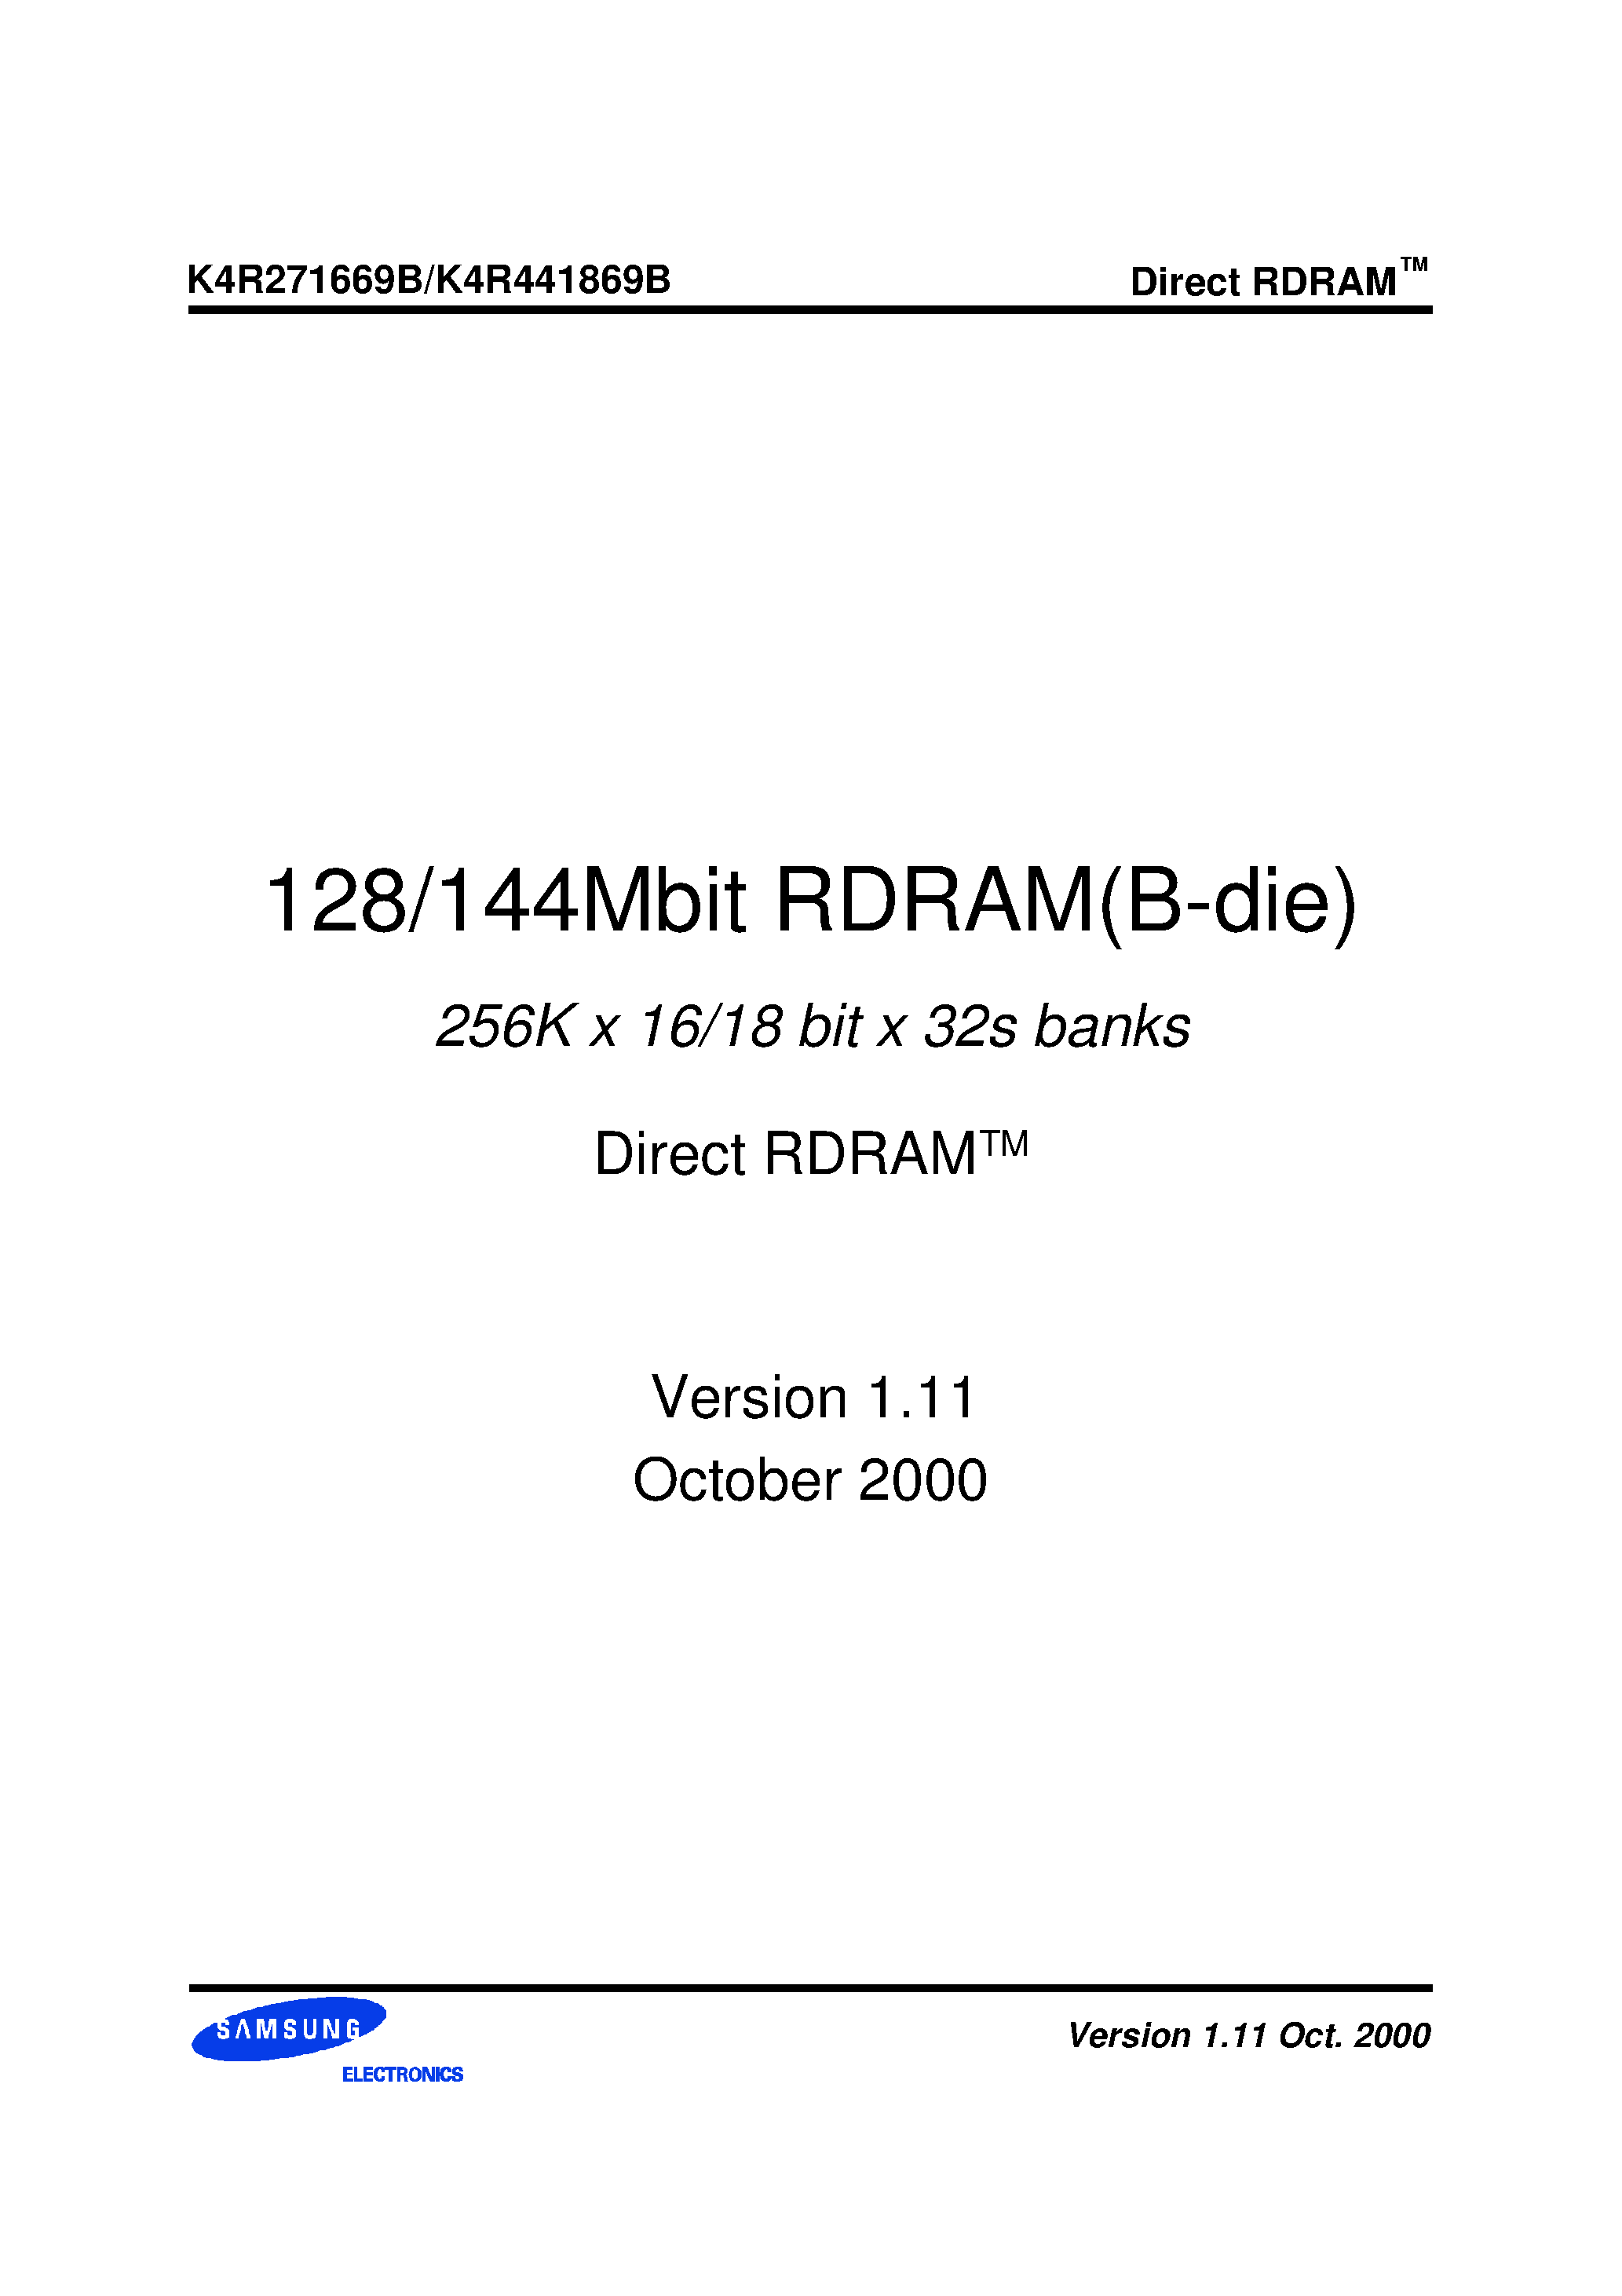 Даташит K4R271669B-N(M)CG6 - 256K x 16/18 bit x 32s banks Direct RDRAMTM страница 1